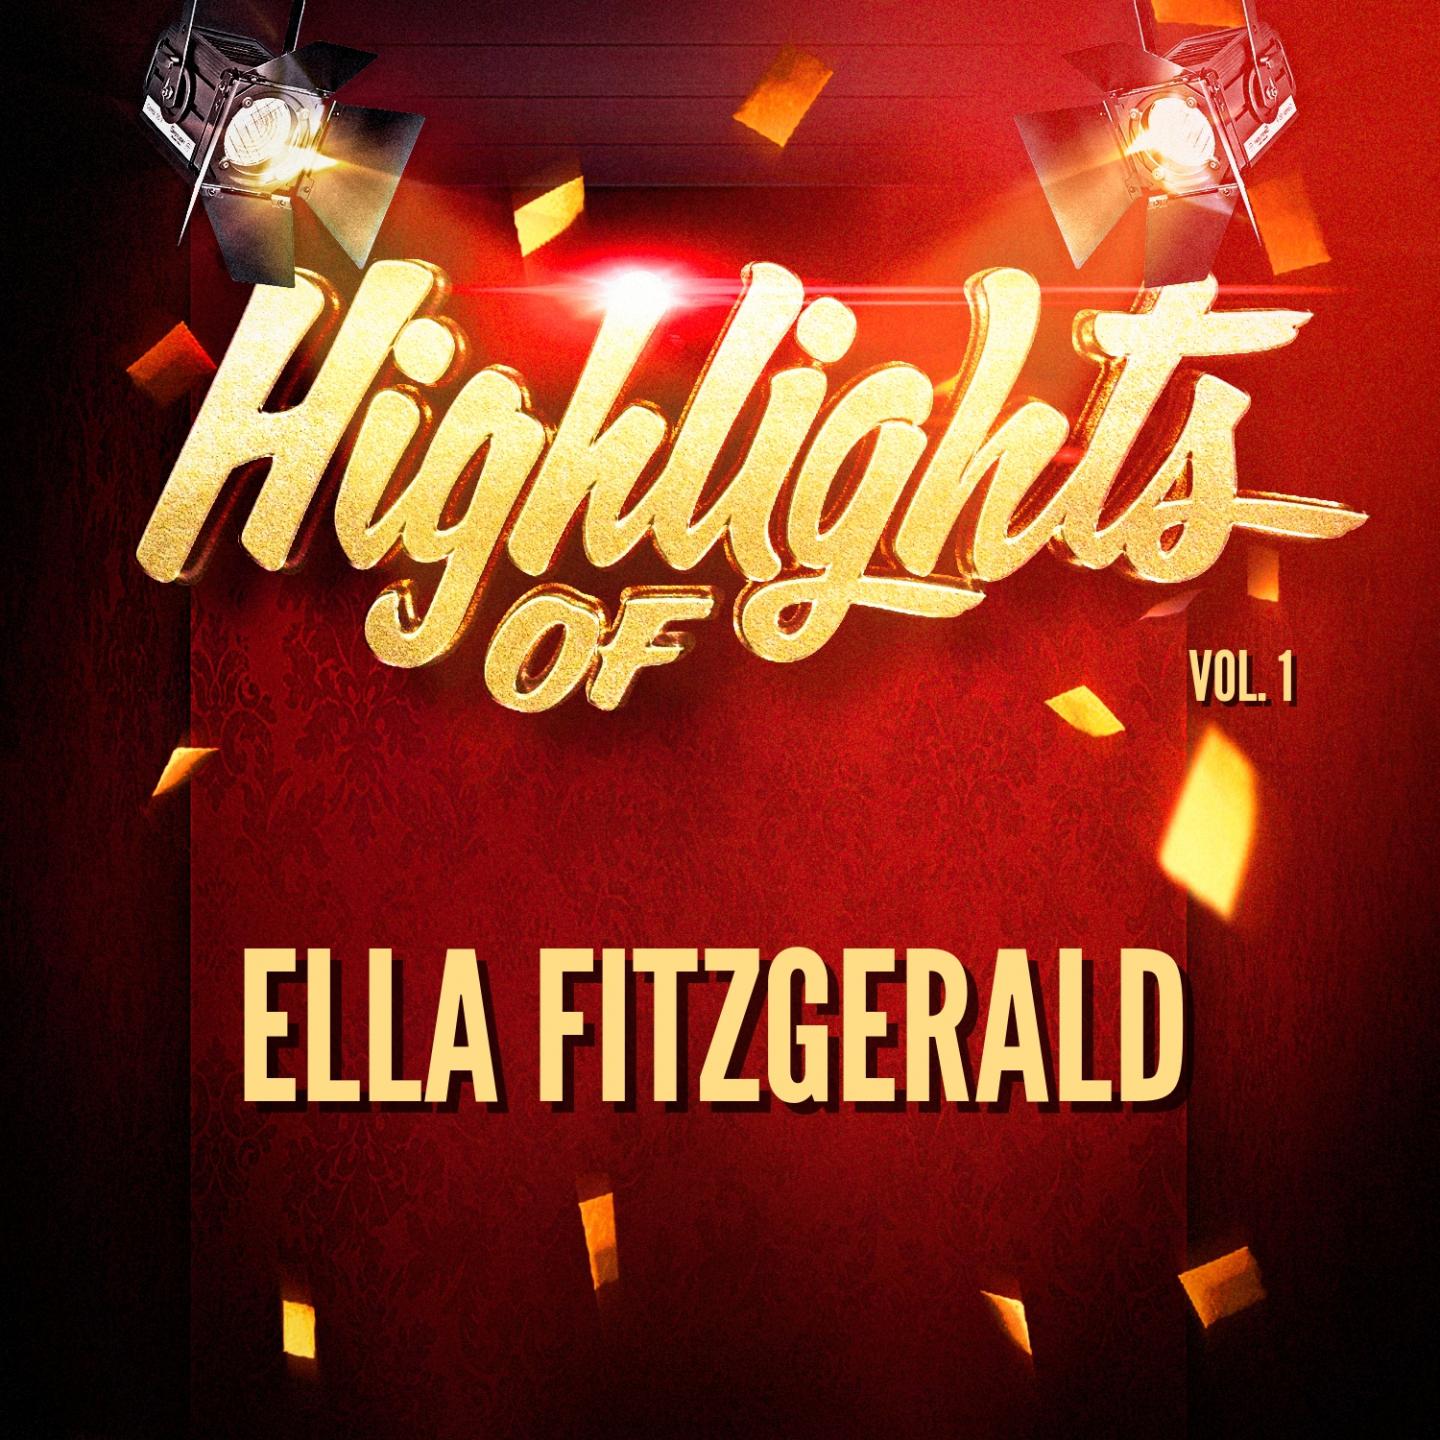 Highlights of Ella Fitzgerald, Vol. 1